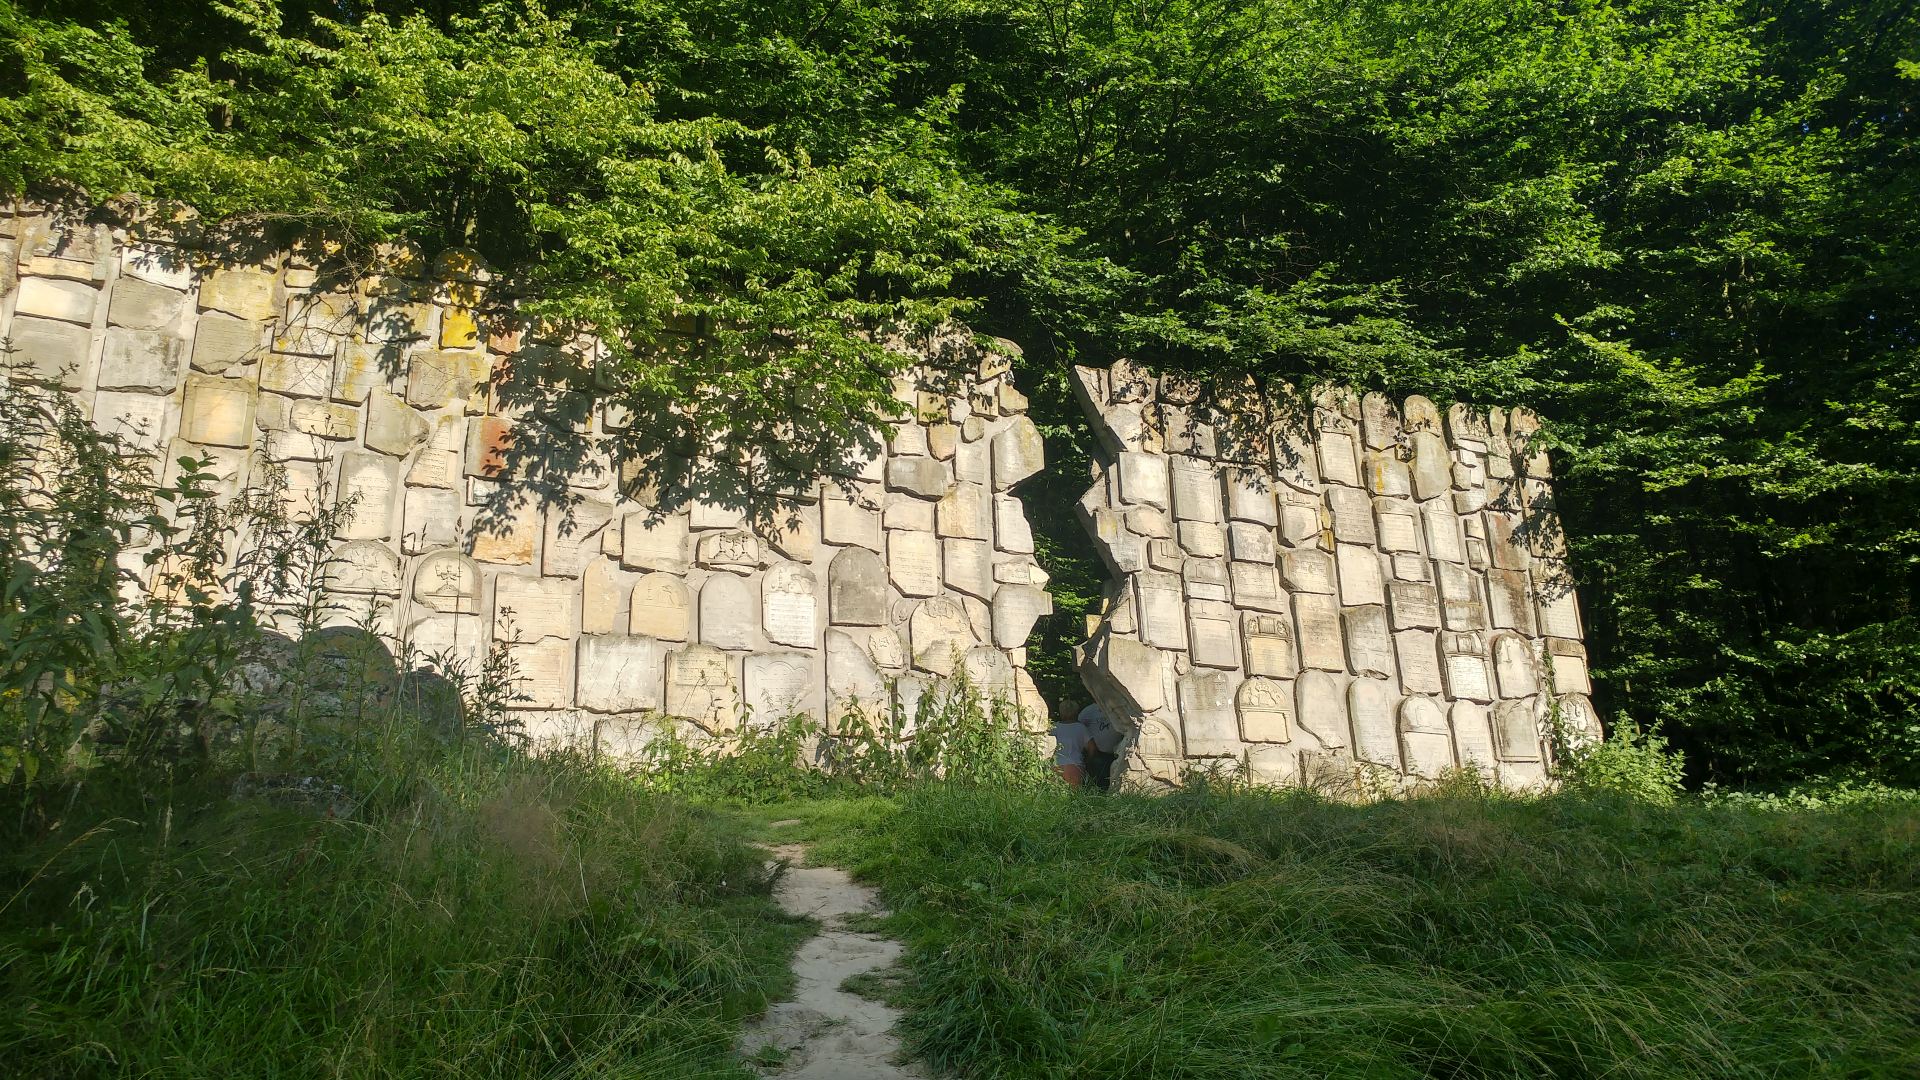 Ściana Płaczu w Kazimierzu Dolnym w miejscowości Kazimierz Dolny